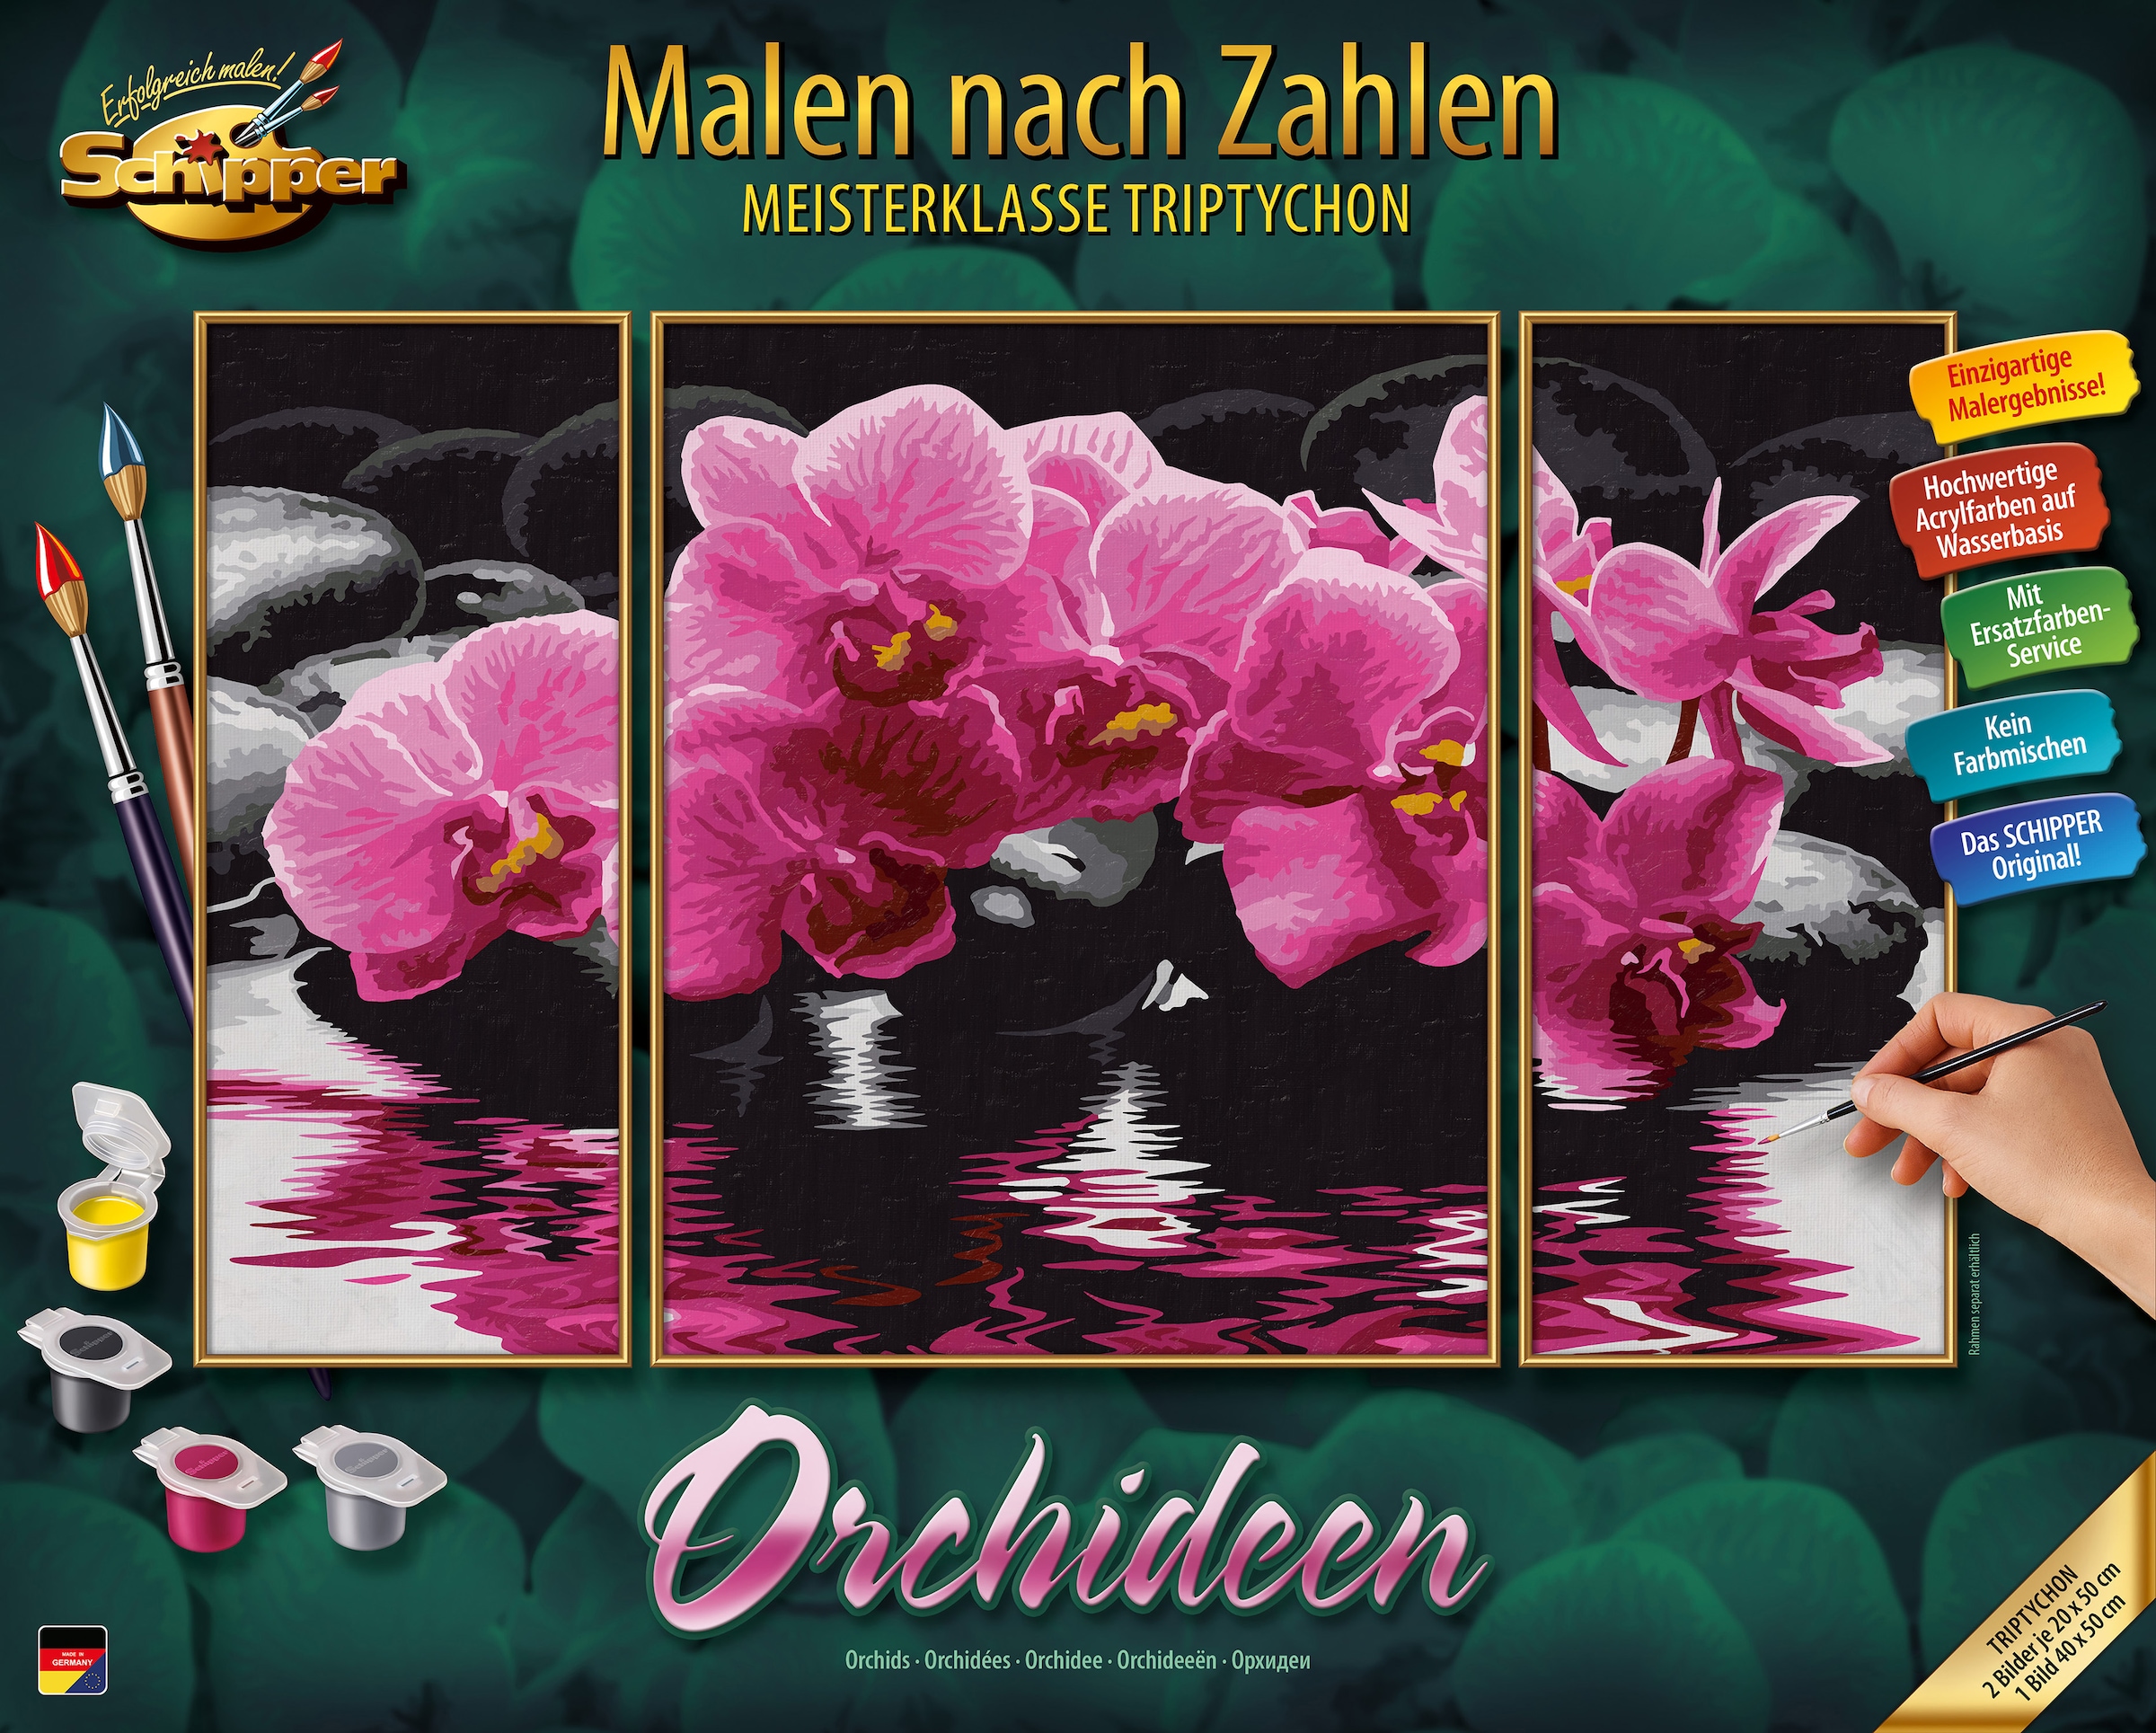 Schipper Malen nach in Triptychon »Meisterklasse Made - Zahlen Orchideen«, Germany bei